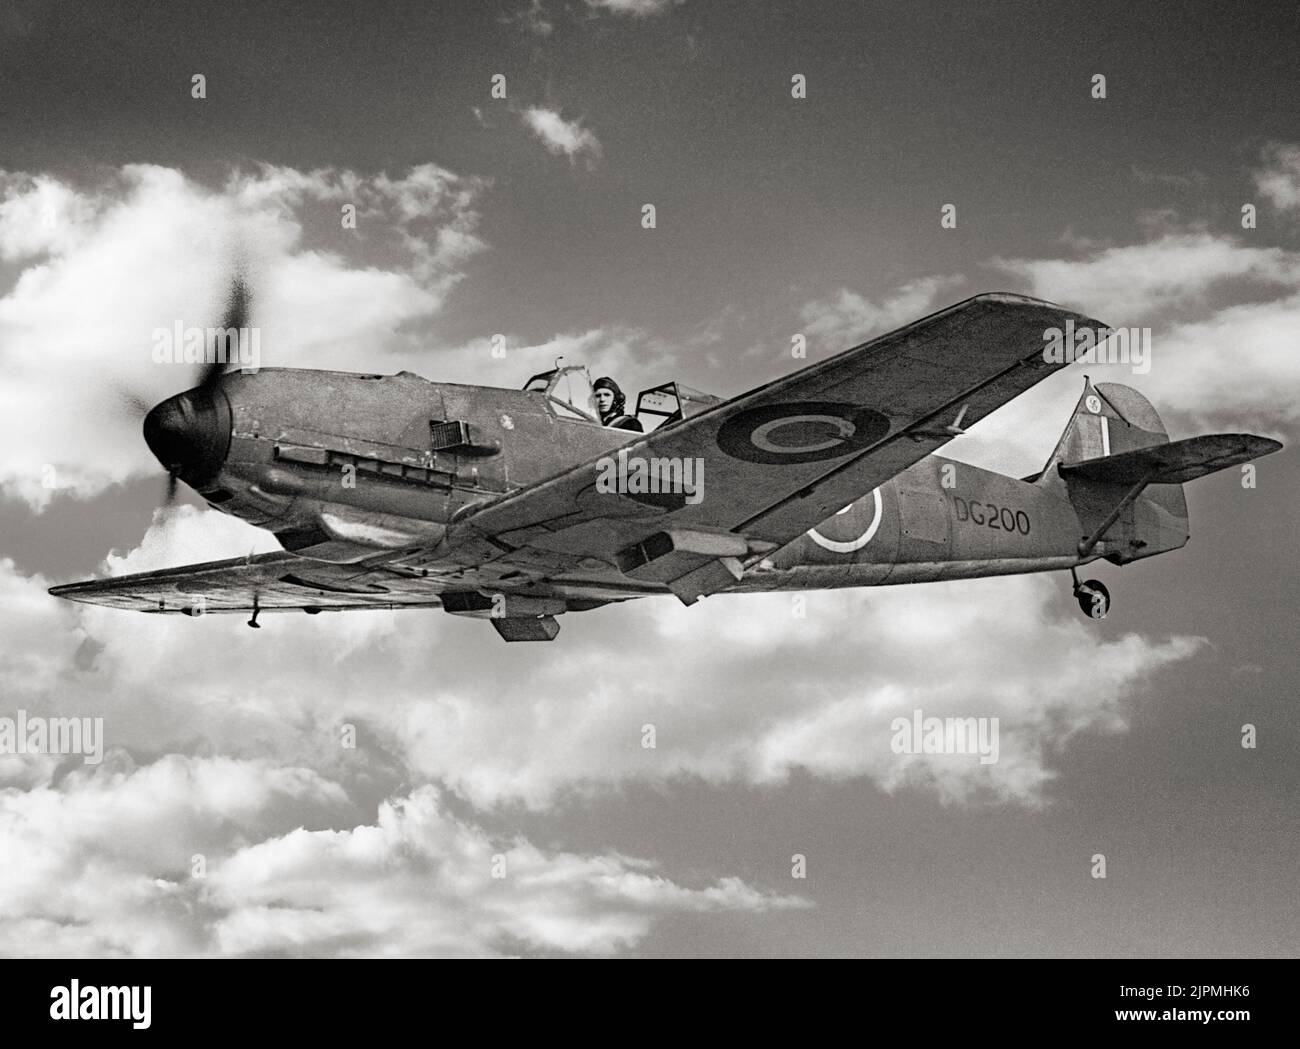 Ein gefangener Messerschmitt Bf 109E-3, DG200, im Flug, während er mit No. 1426 (feindliches Flugzeug) Flug diente. Das Flugzeug wurde am 27. November 1940 in Manston, Kent, zwangsgelandet, nachdem es von Supermarine Spitfires der Squadron RAF Nr. 66 über der Themsemündung angegriffen worden war. Nach der Reparatur im Royal Aircraft-Betrieb wurde es 1941 an Rolls-Royce Ltd für Motorleistungstests ausgeliefert. Es wurde später an das Experimentelle Flugzeug- und Rüstungslager in Boscombe Down übergeben und dort gelagert. Stockfoto